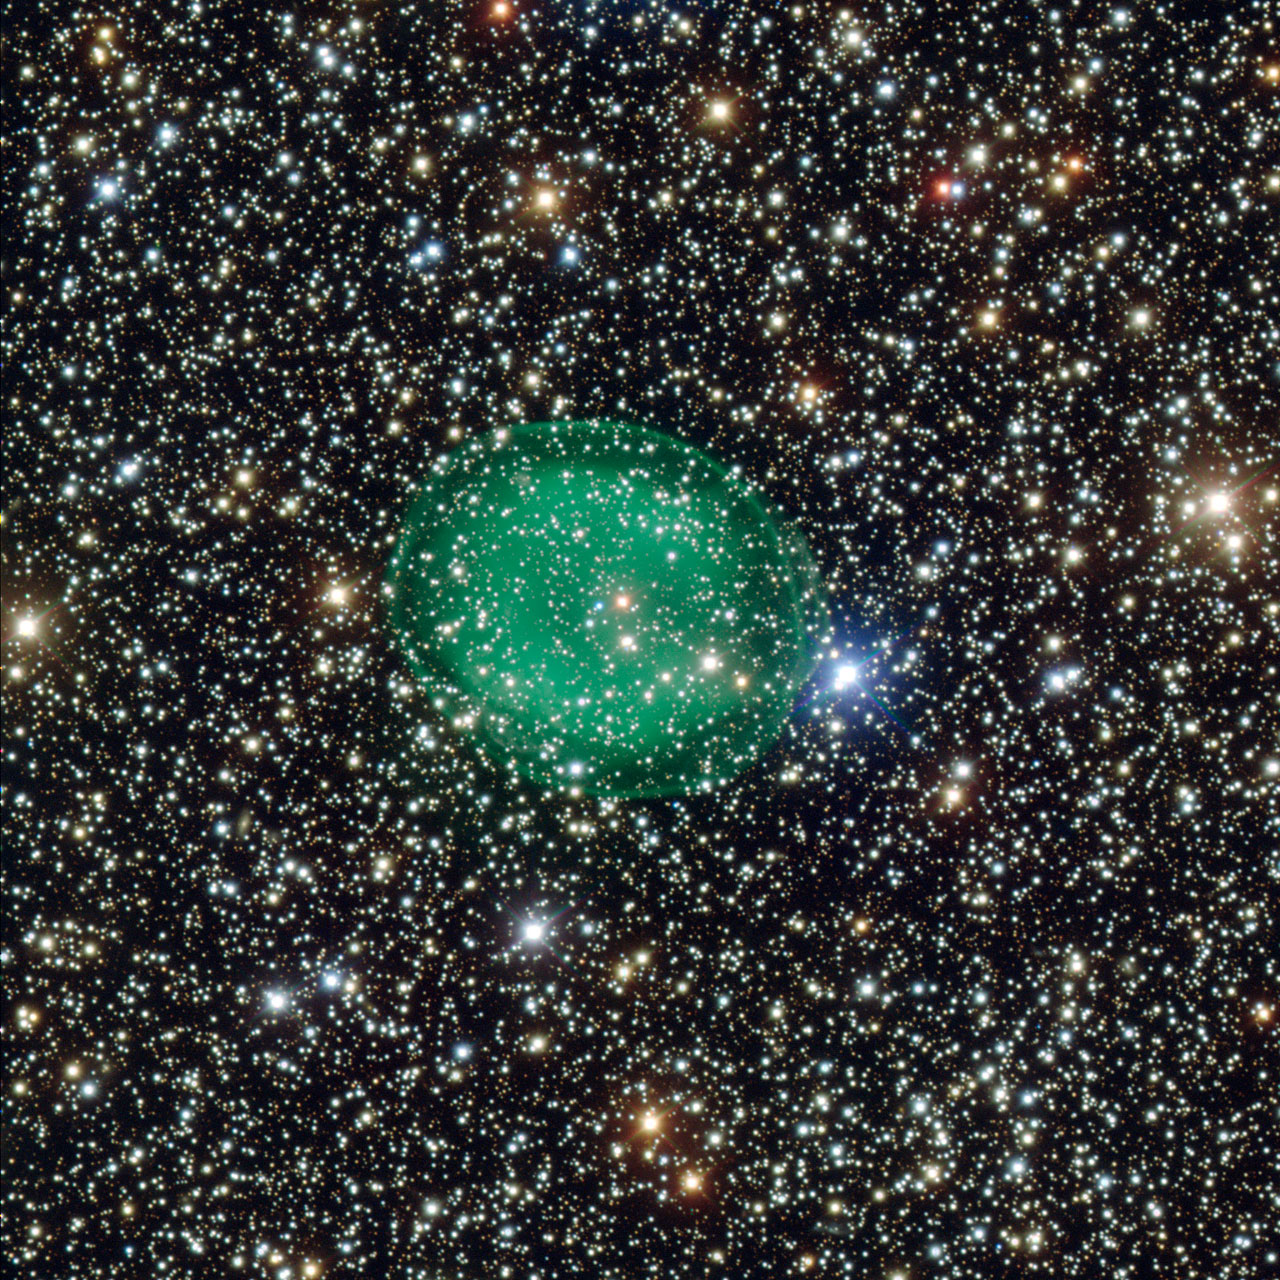 Cette étonnante image obtenue grâce au très grand télescope de l'ESO, le VLT, montre la nébuleuse planétaire verte et éclatante IC 1295 entourant une étoile de faible luminosité en fin de vie. Les restes consumés de l’étoile se situent au centre de la nébuleuse, en un point couleur bleu-blanc. © ESO